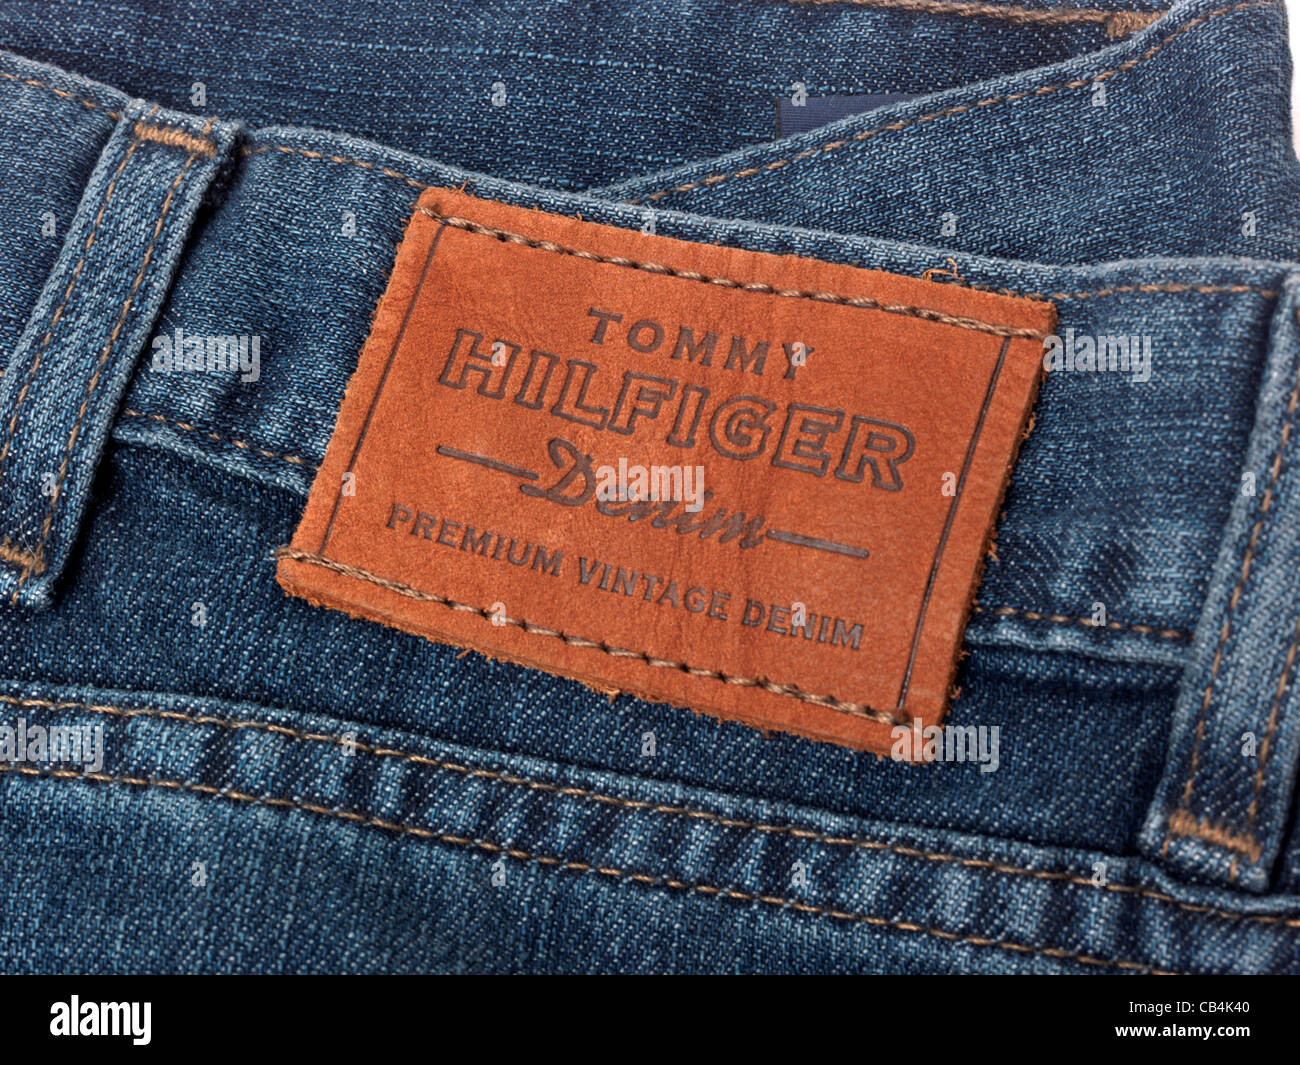 Designer-Jeans Tommy Hillfiger Label Stockfoto